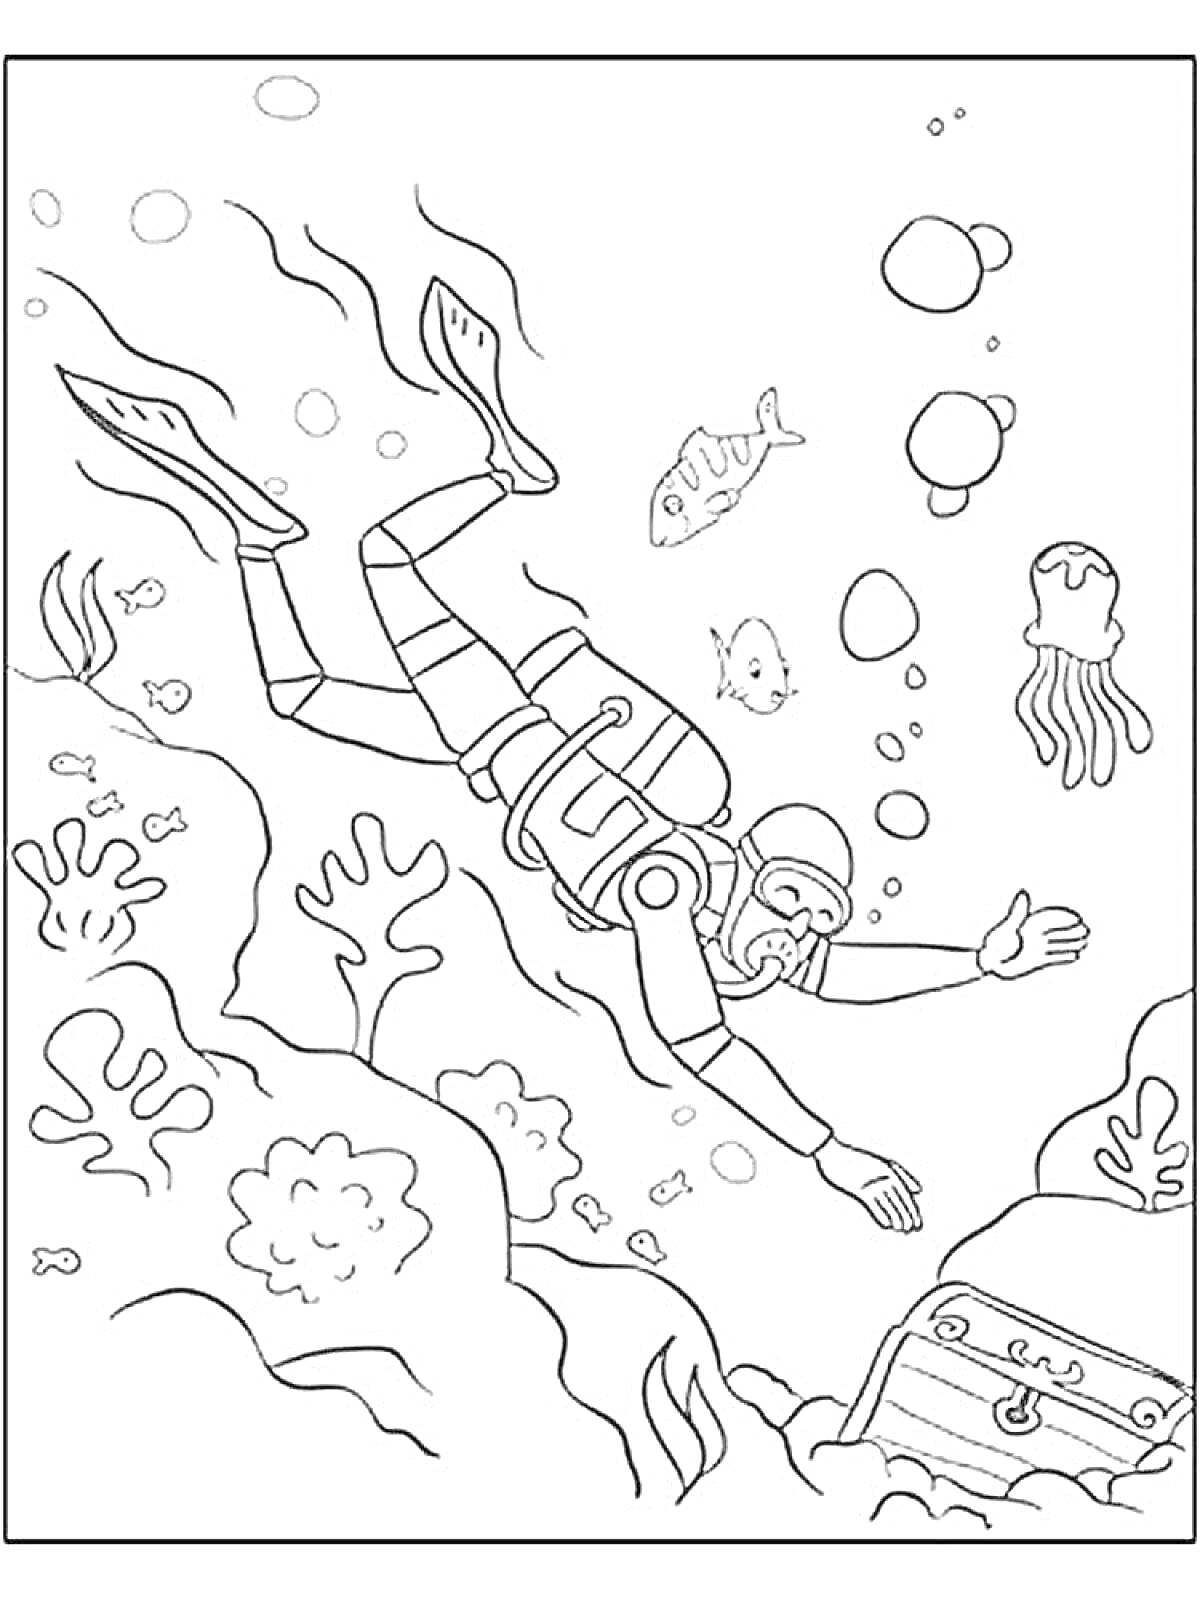 Раскраска Водолаз под водой с подводными существами и сундуком сокровищ